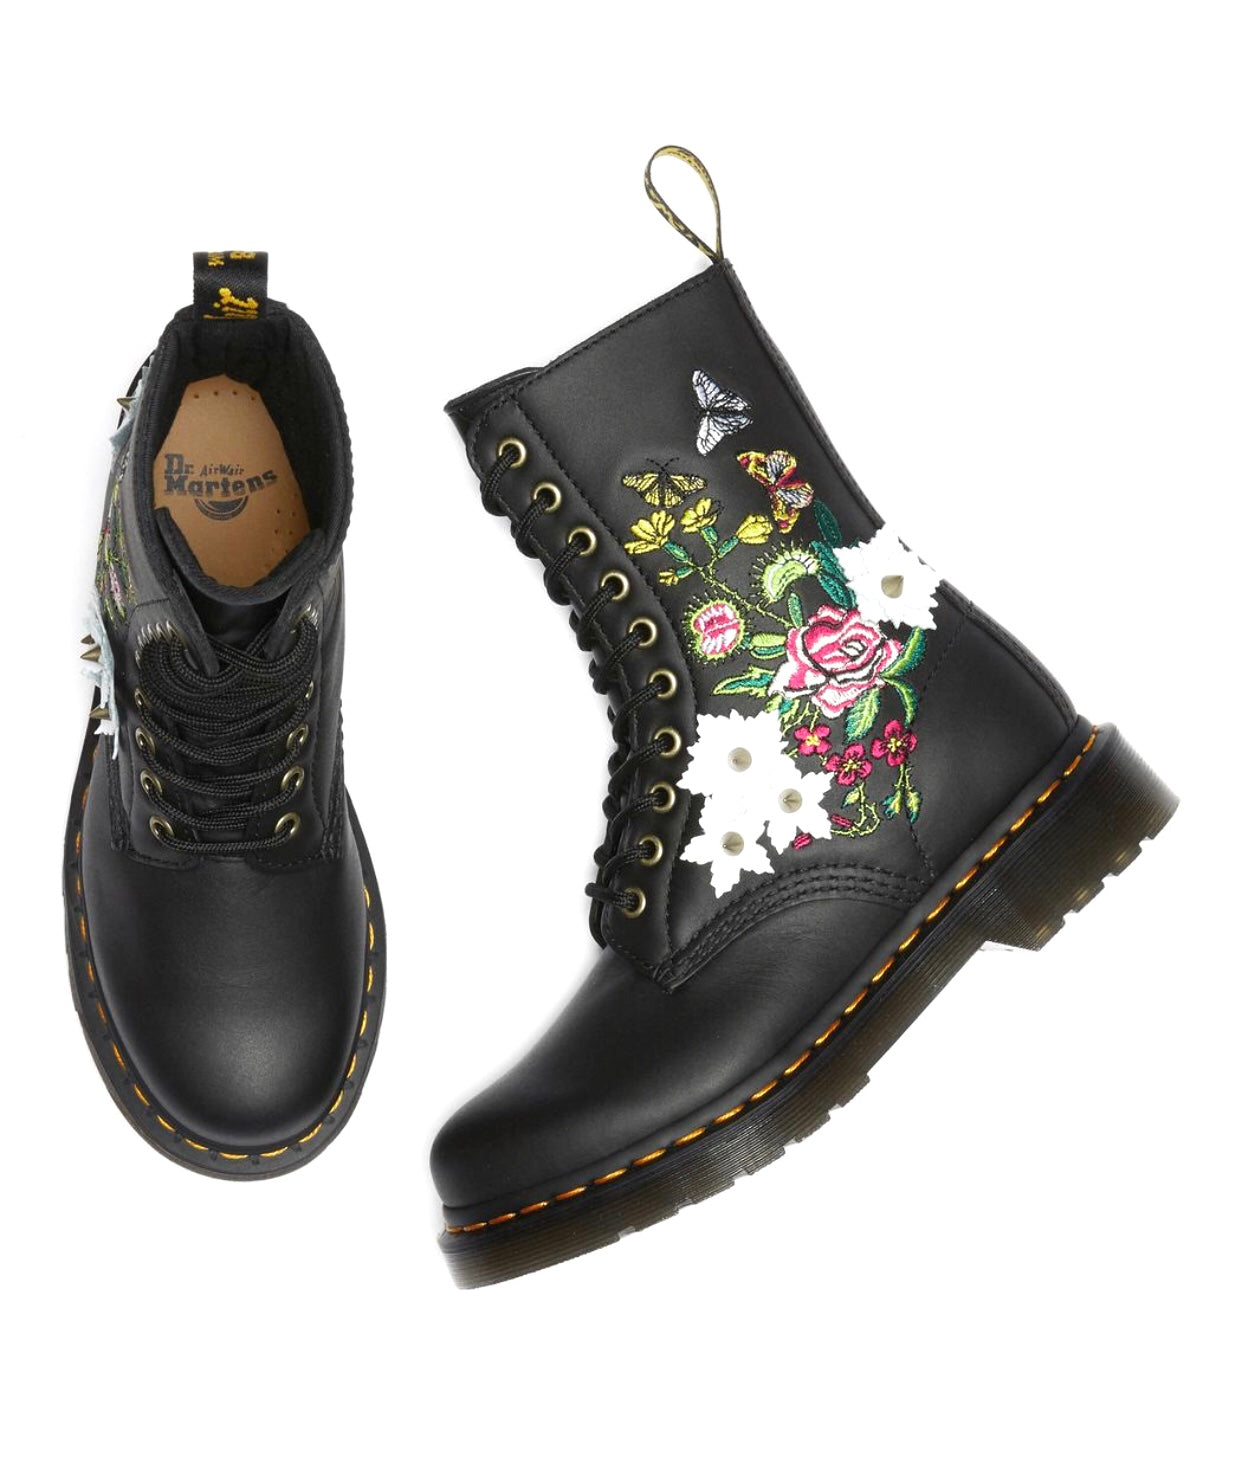 Dr. Martens 1490 Bloom Black Nappa Floral 10 Eyelet Boot